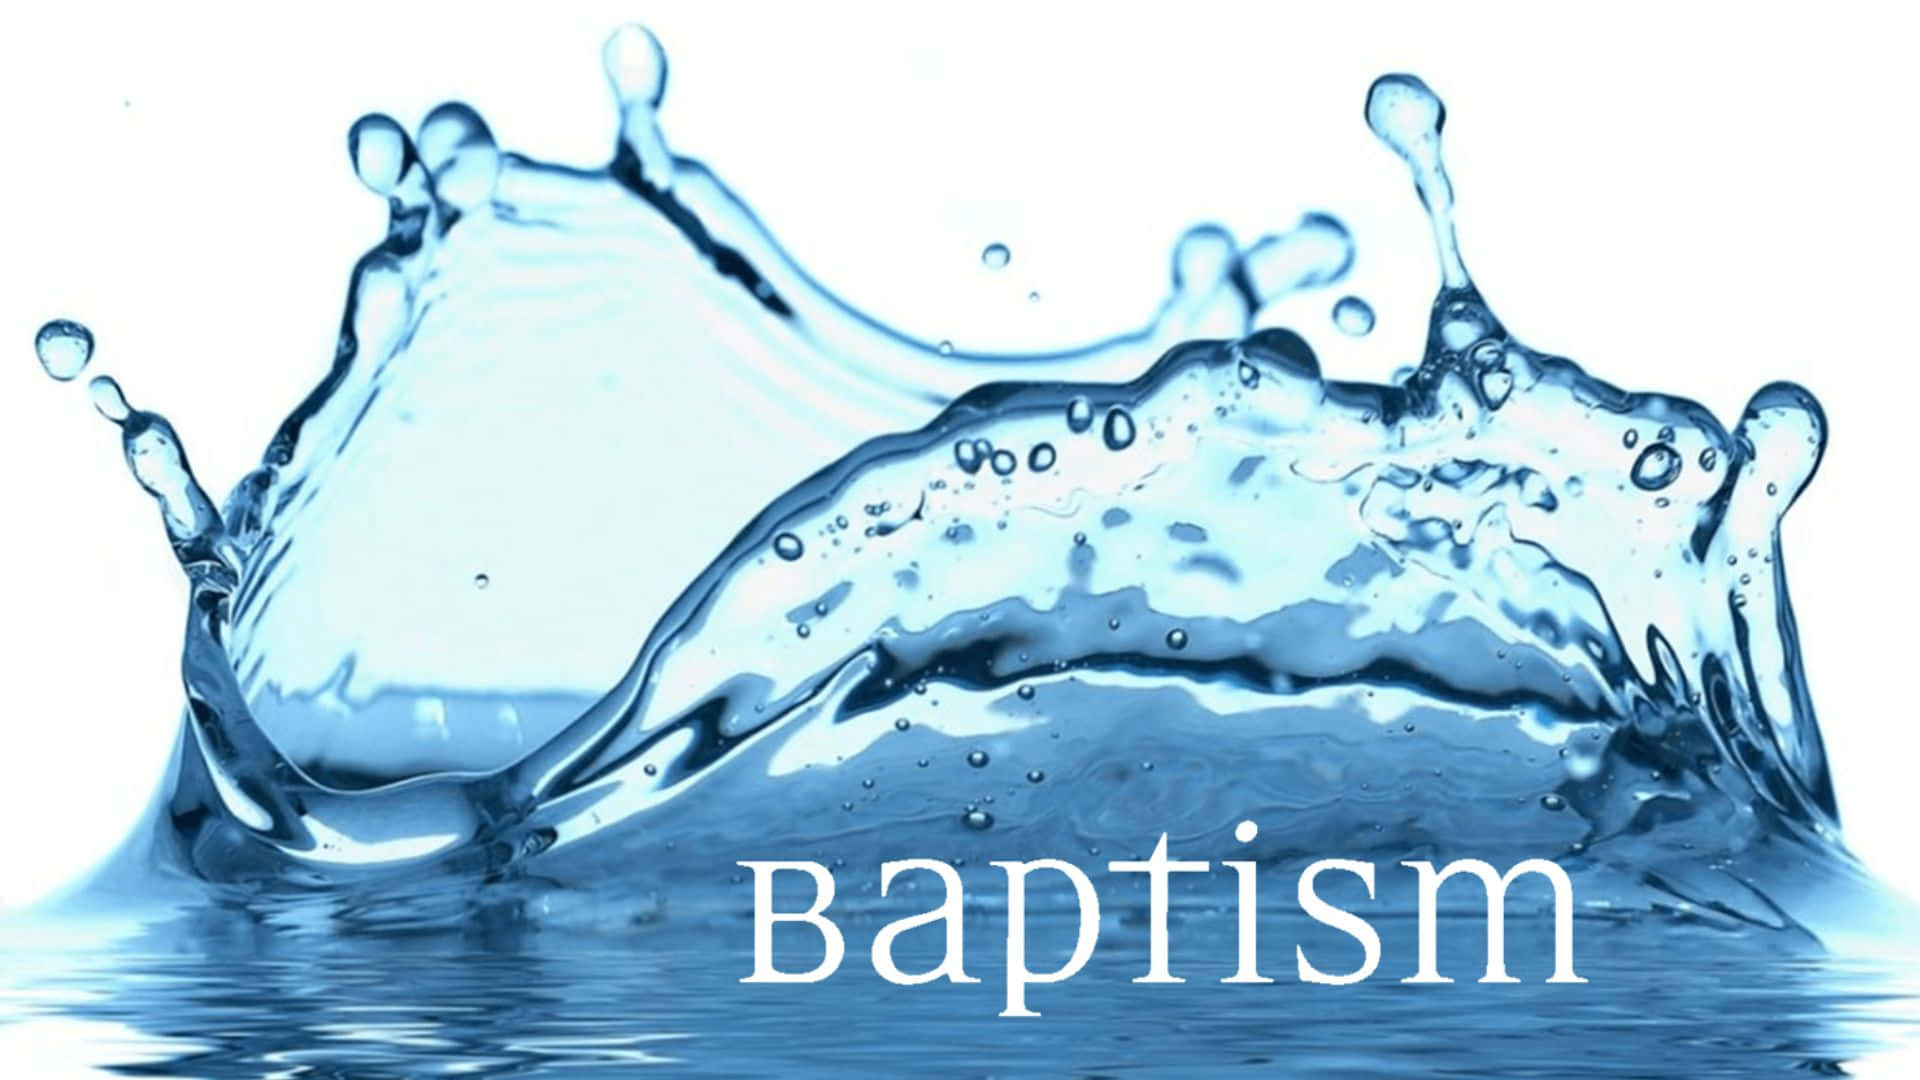 baptism backgrounds